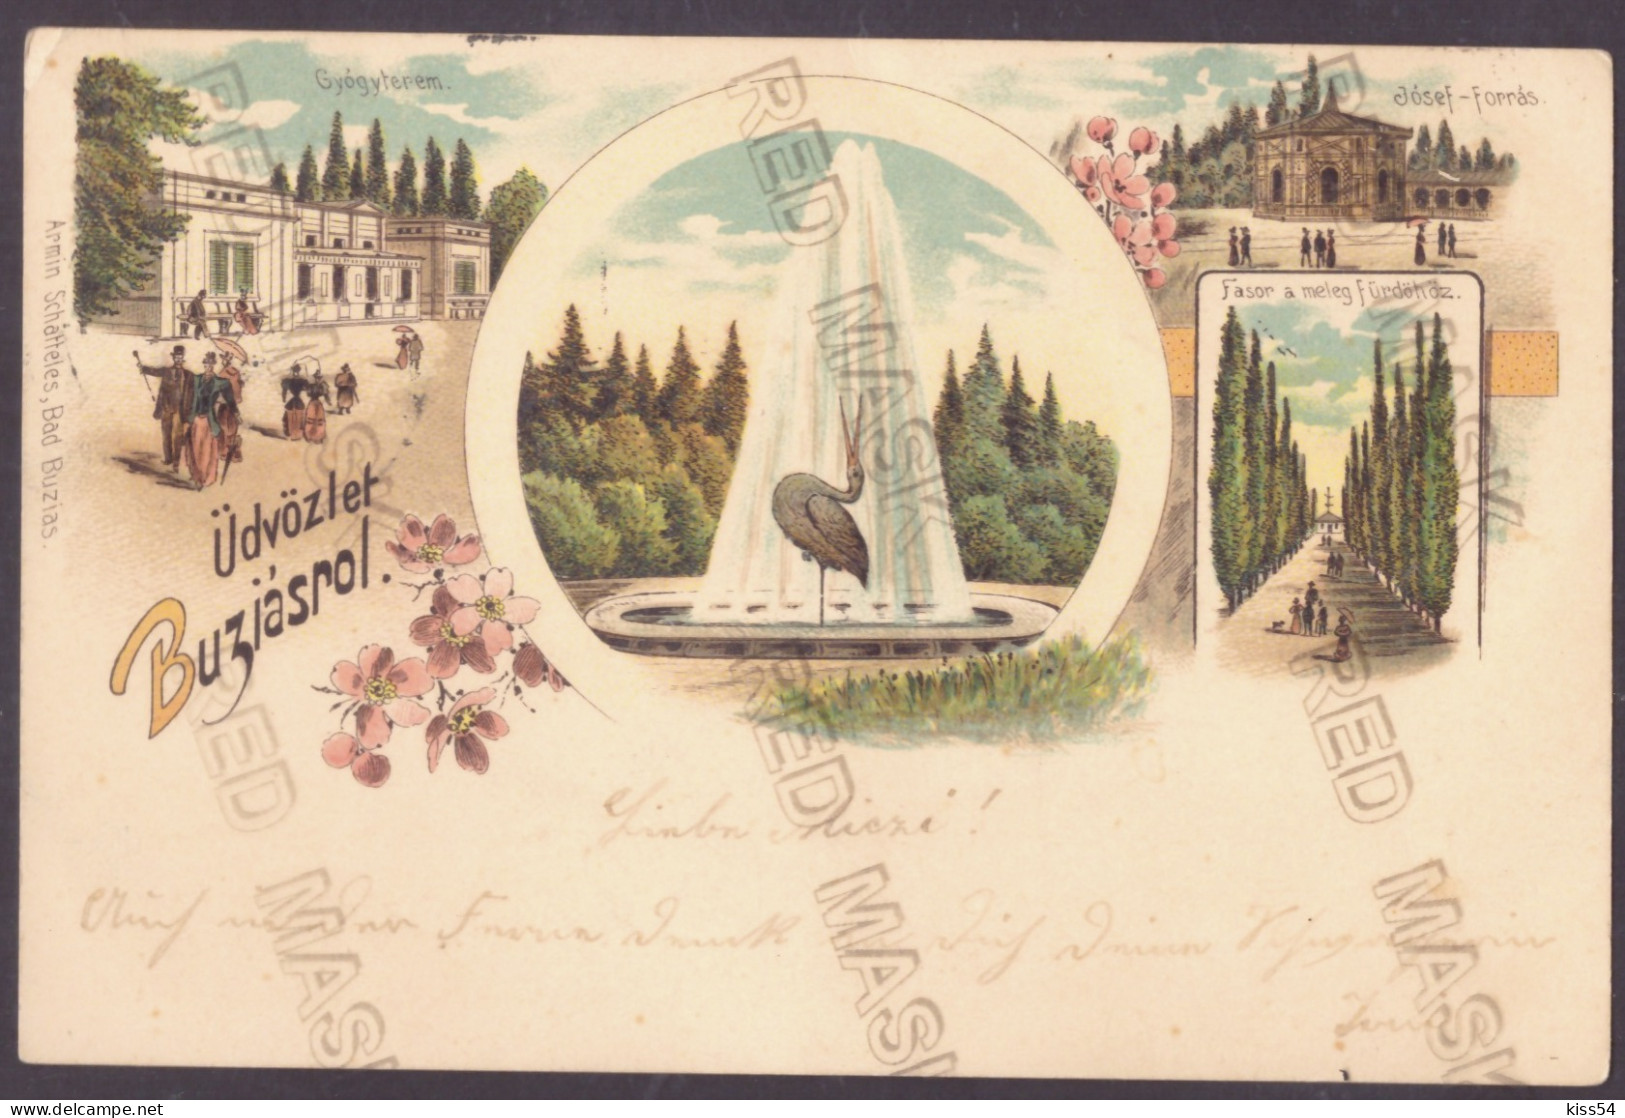 RO 05 - 24949 BUZIAS, Timis, Litho, Romania - Old Postcard - Used - 1899 - Roumanie